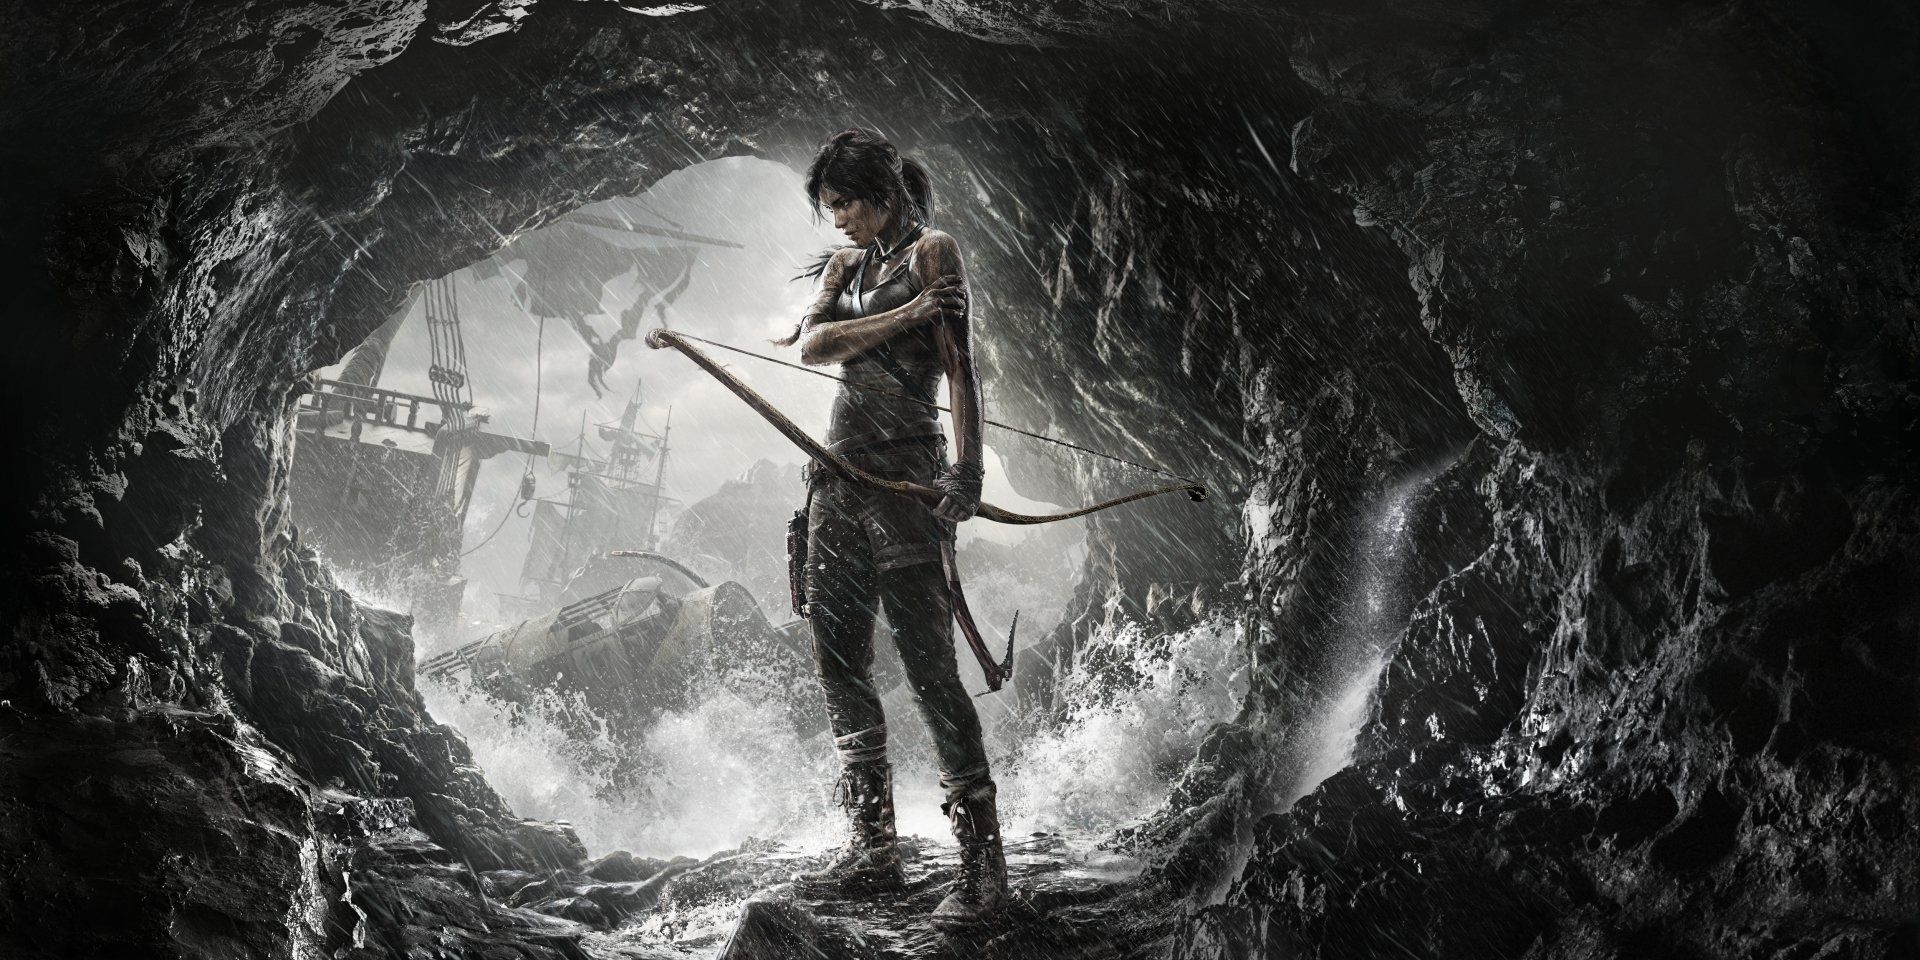 Lara Croft stands in a cave in Tomb Raider 